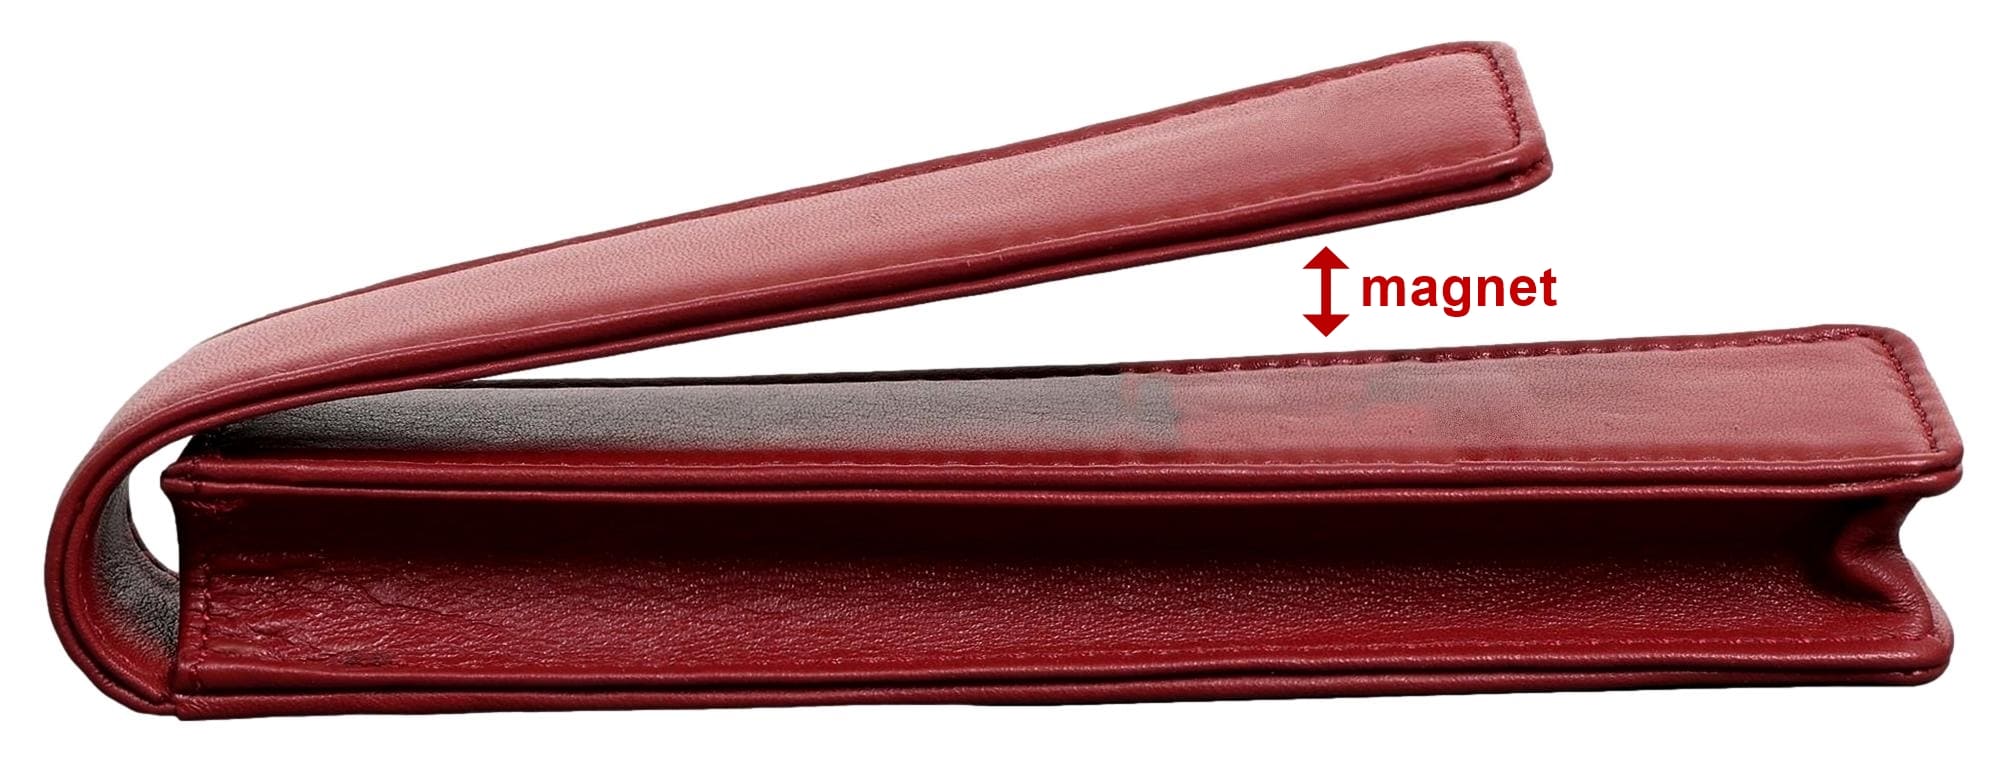 Elbleder Polo 08 - Fülleretui für einen Stift Rot